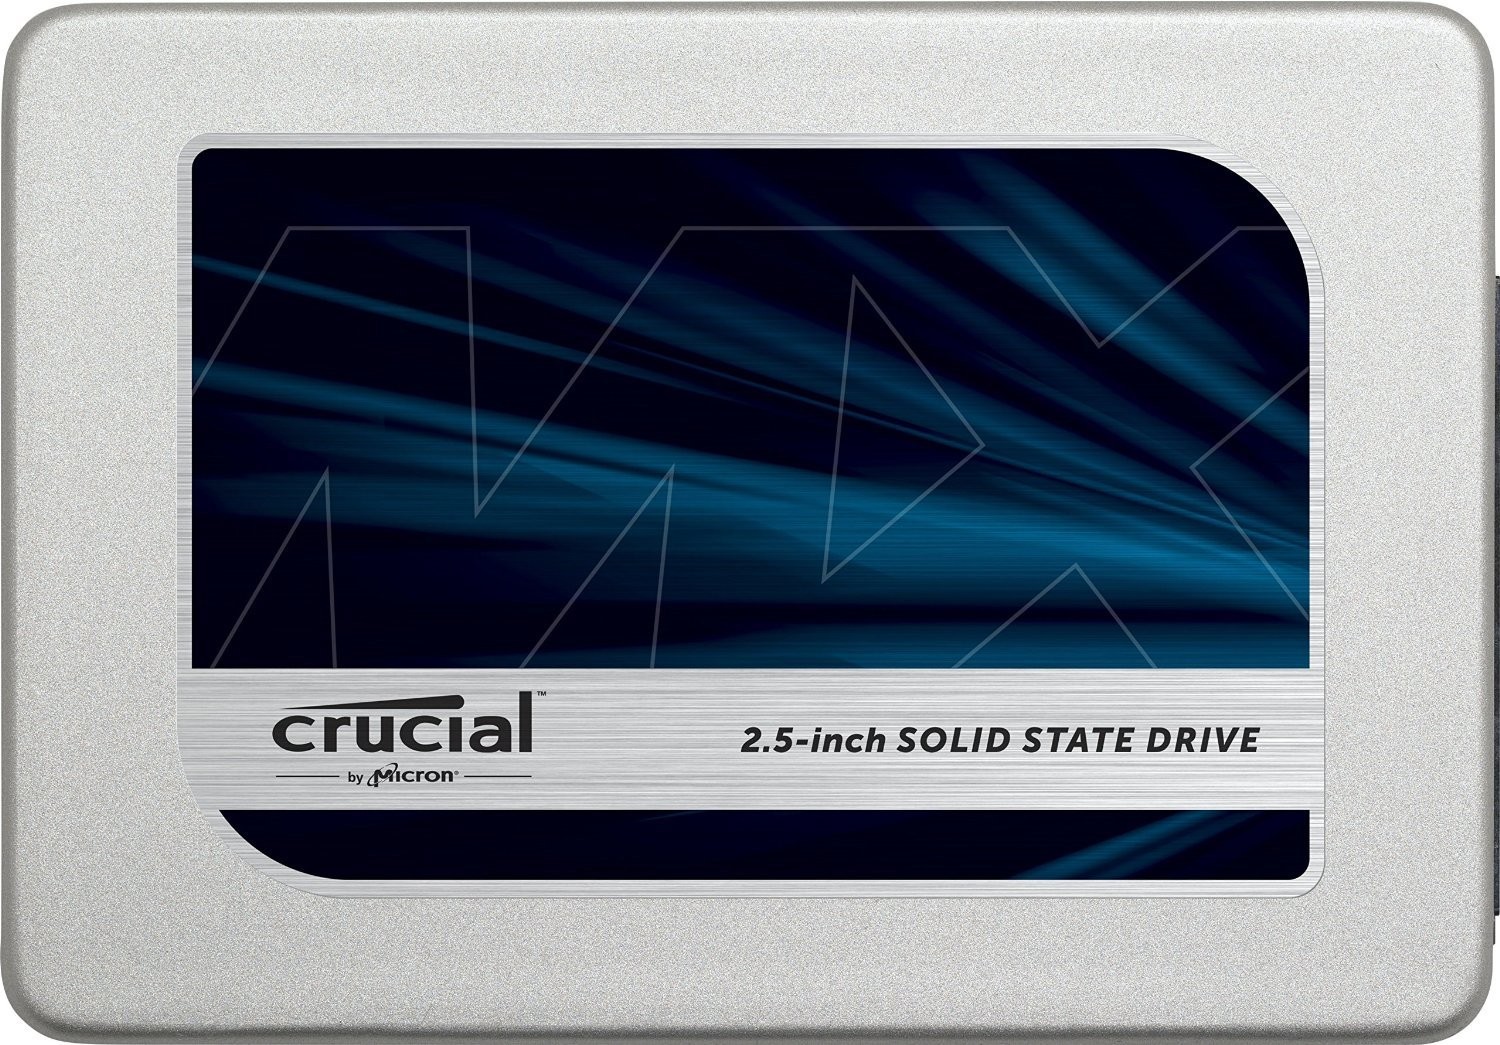 Immagine pubblicata in relazione al seguente contenuto: Crucial introduce il drive a stato solido SSD MX300 750GB con 3D NAND | Nome immagine: news24452_Crucial-SSD-MX300-750GB_2.jpg